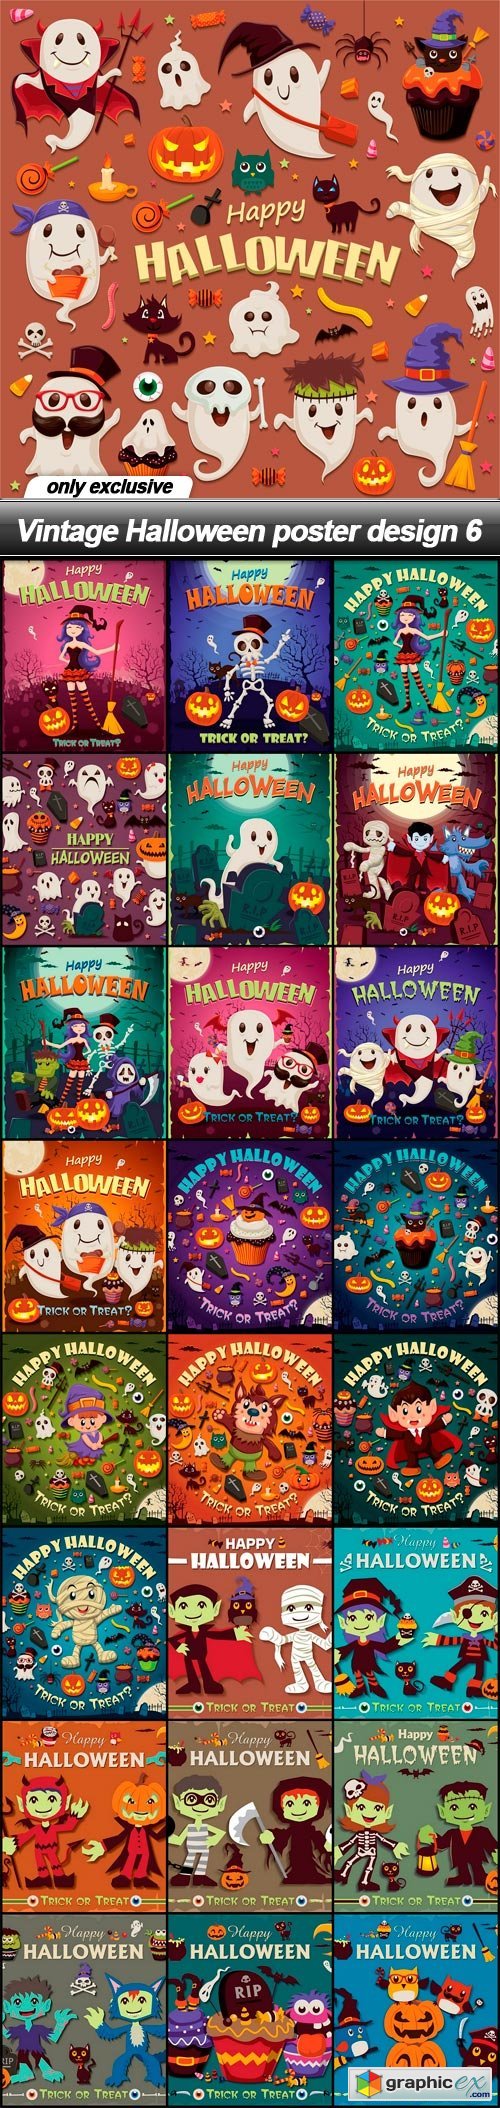 Vintage Halloween poster design 6 - 25 EPS